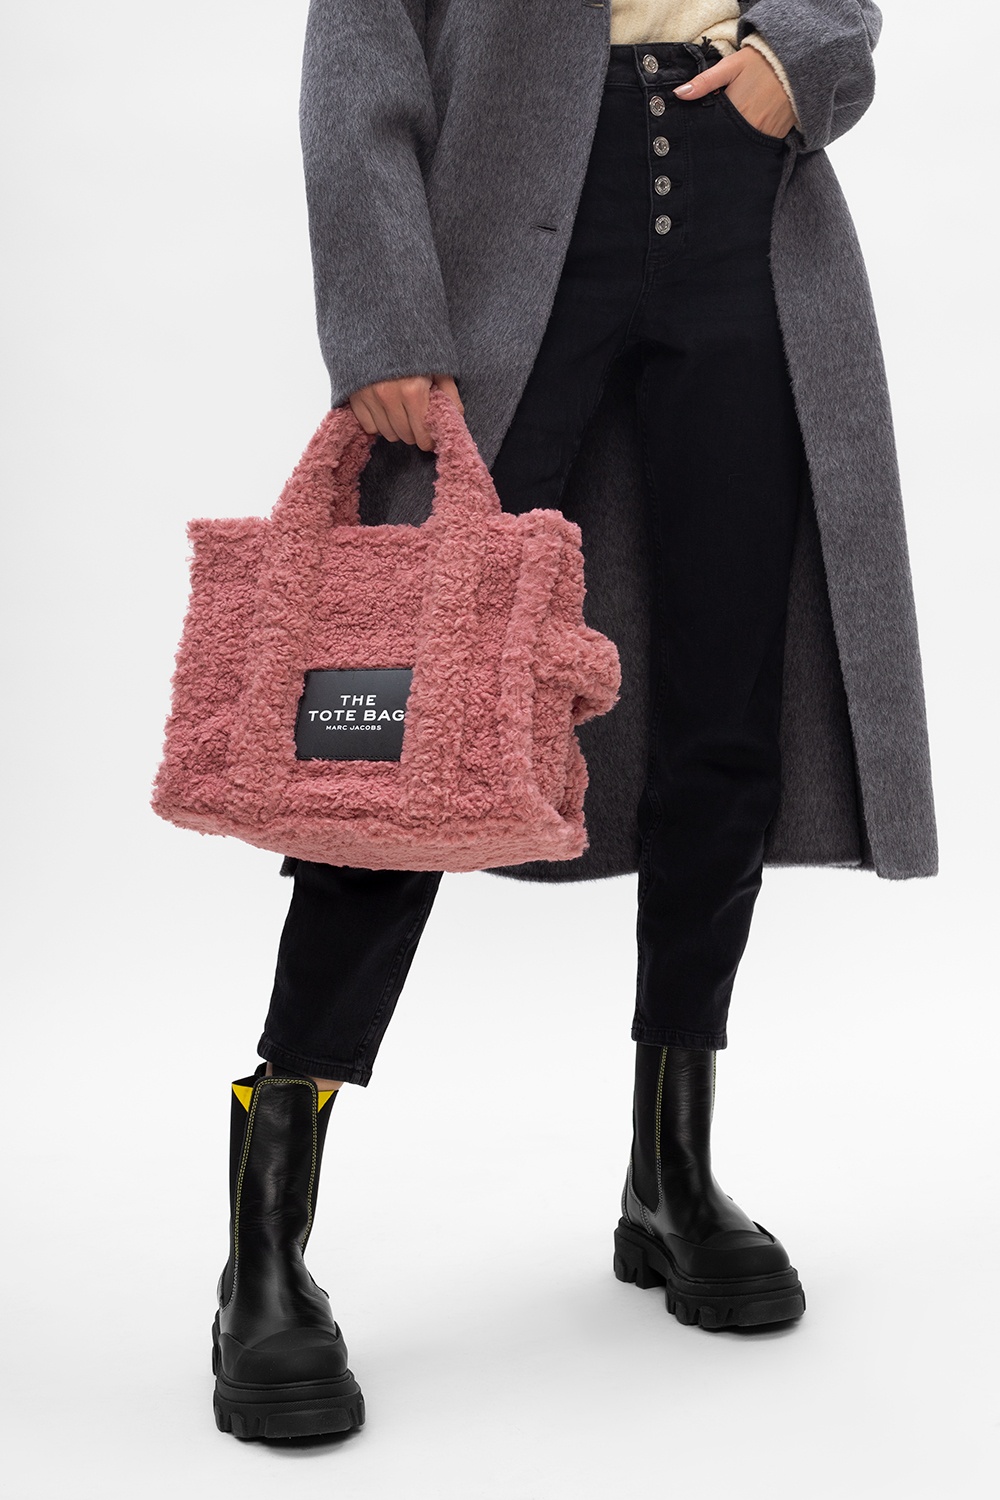 The Shoulder bag, Marc Jacobs